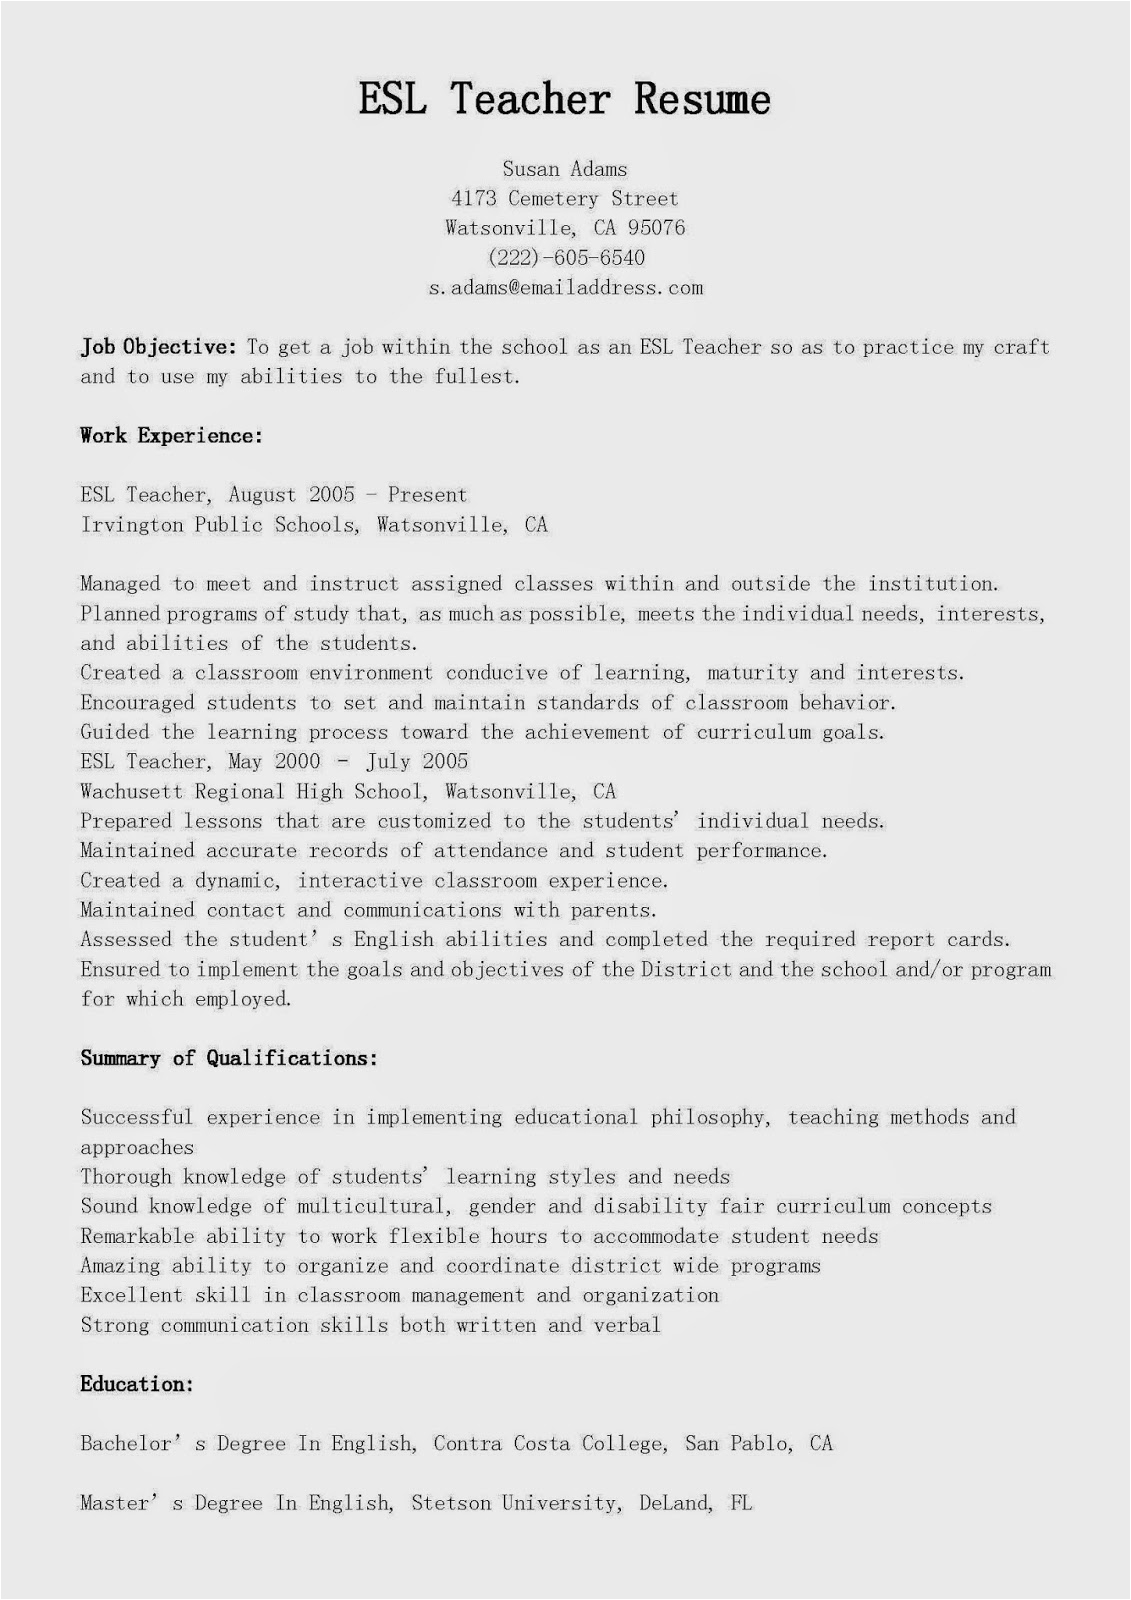 Sample Resume for Esl Teaching Job Resume Samples Esl Teacher Resume Sample